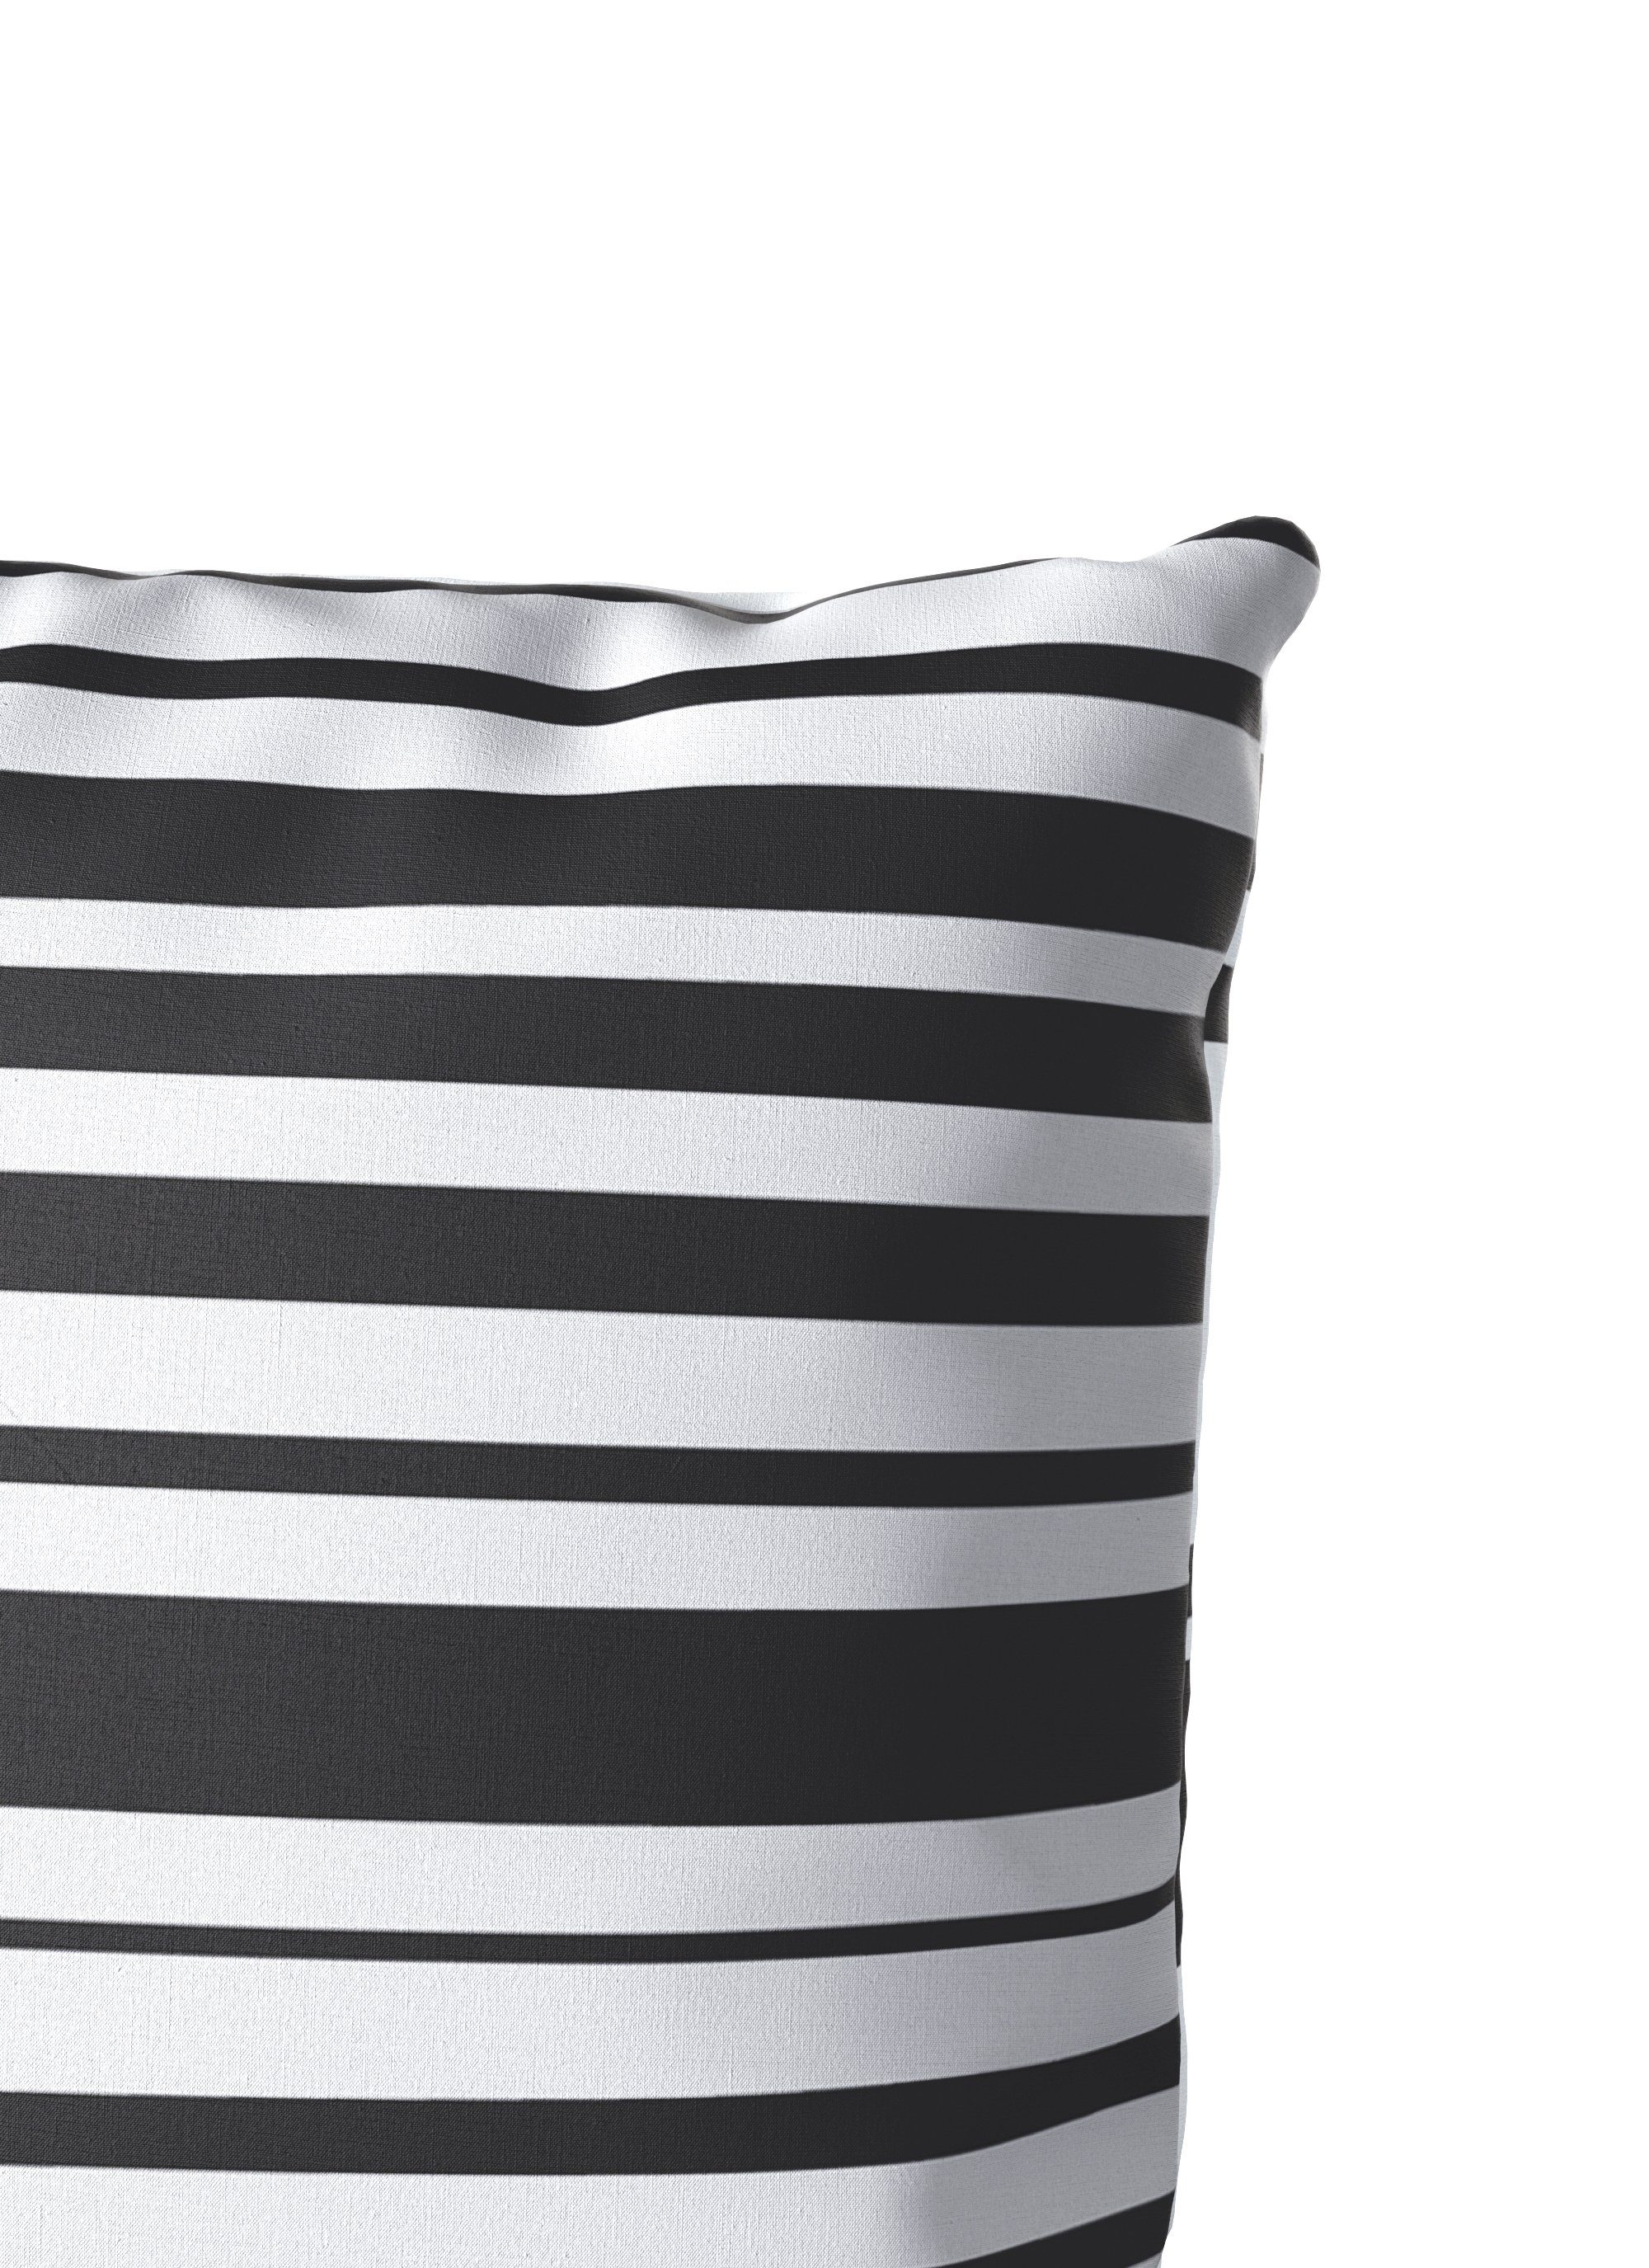 Bettwäsche Cameo Banani, oder Bettwäsche aus schwarz/weiß 2 Baumwolle, Bettwäsche Gr. Renforcé, 135x200 im Streifen-Design Bruno teilig, 155x220 cm, in